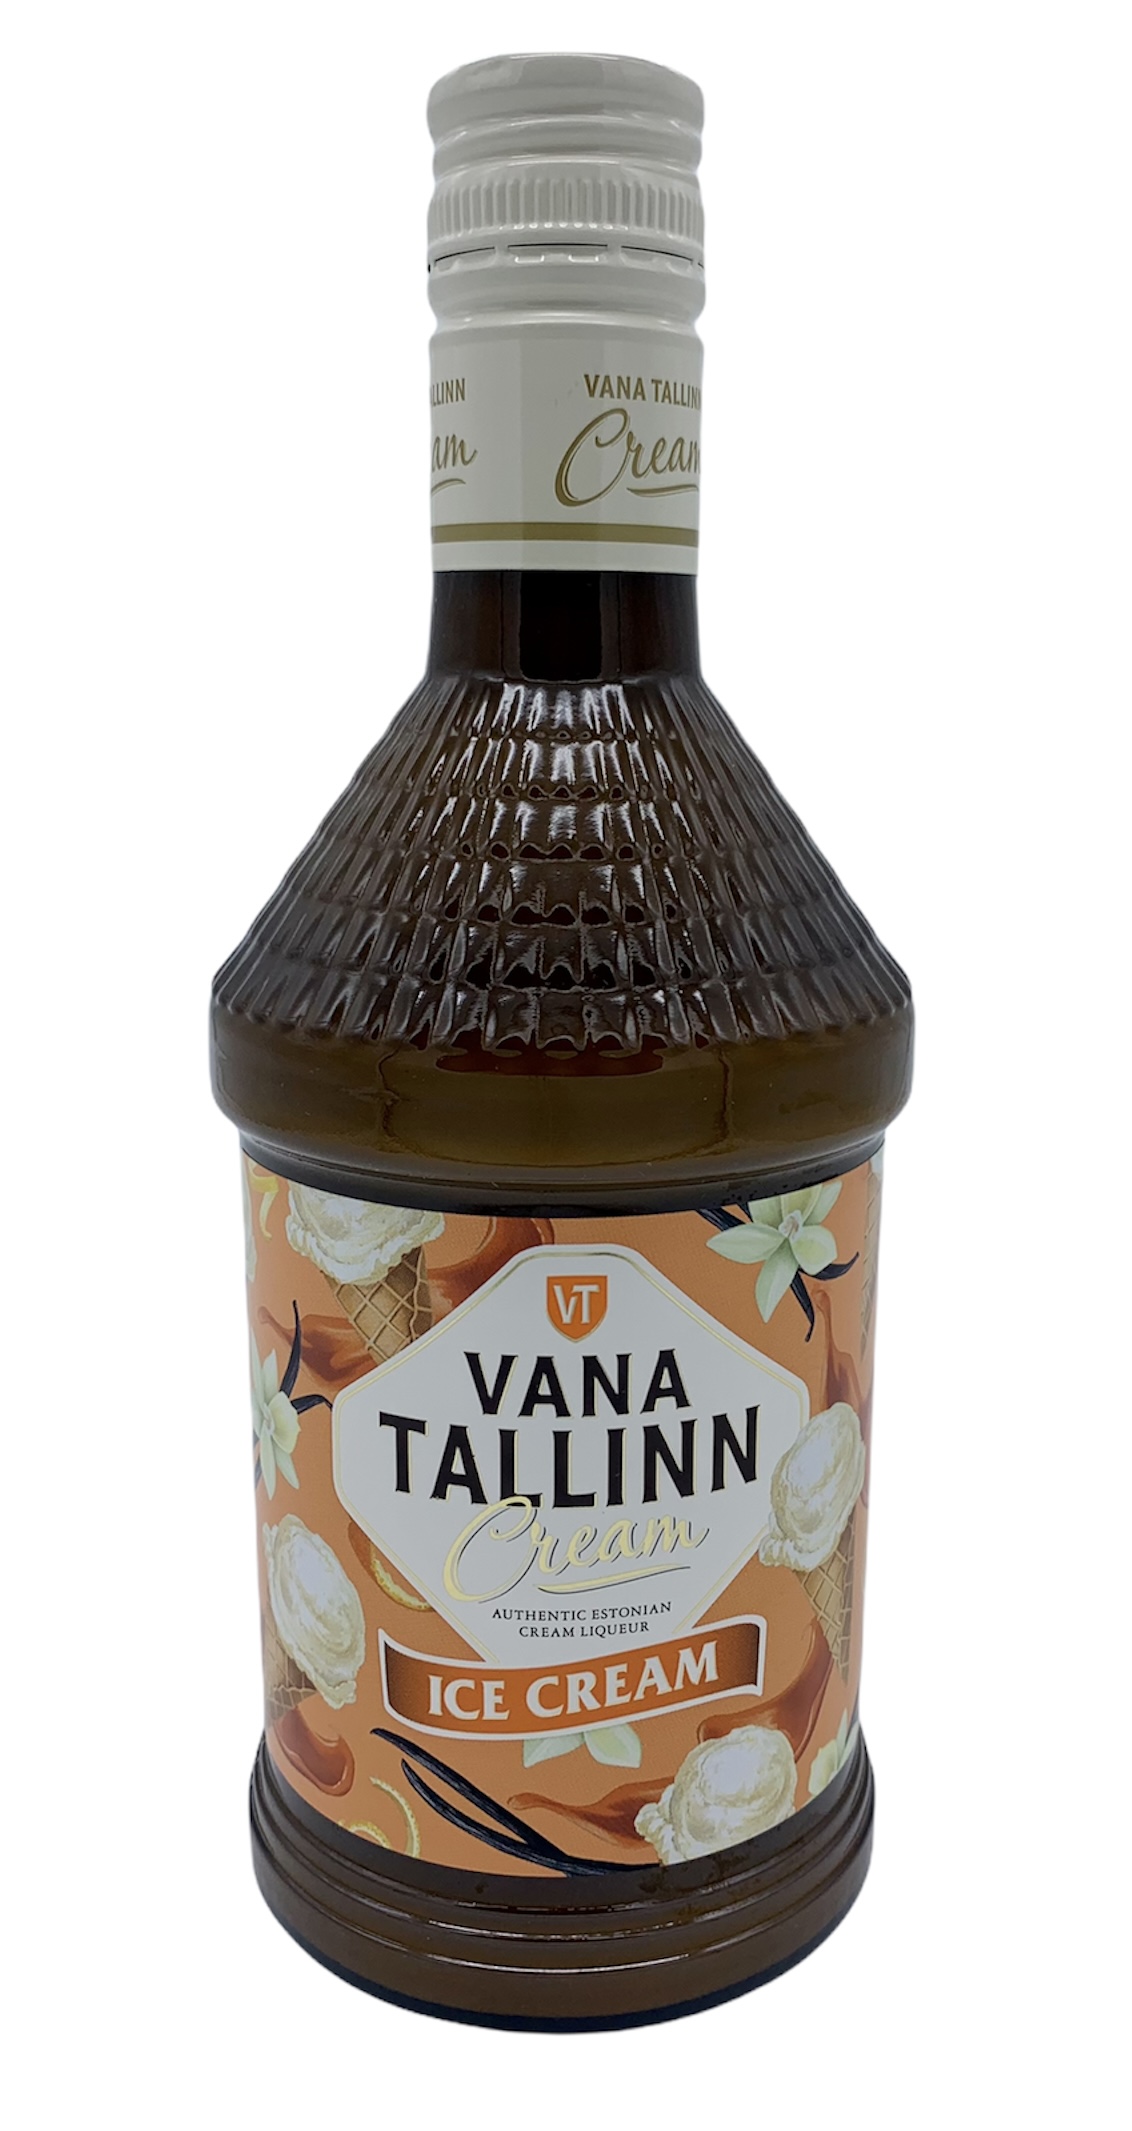 VANA TALLINN Cream Likör IceCream 16%, 500 ml